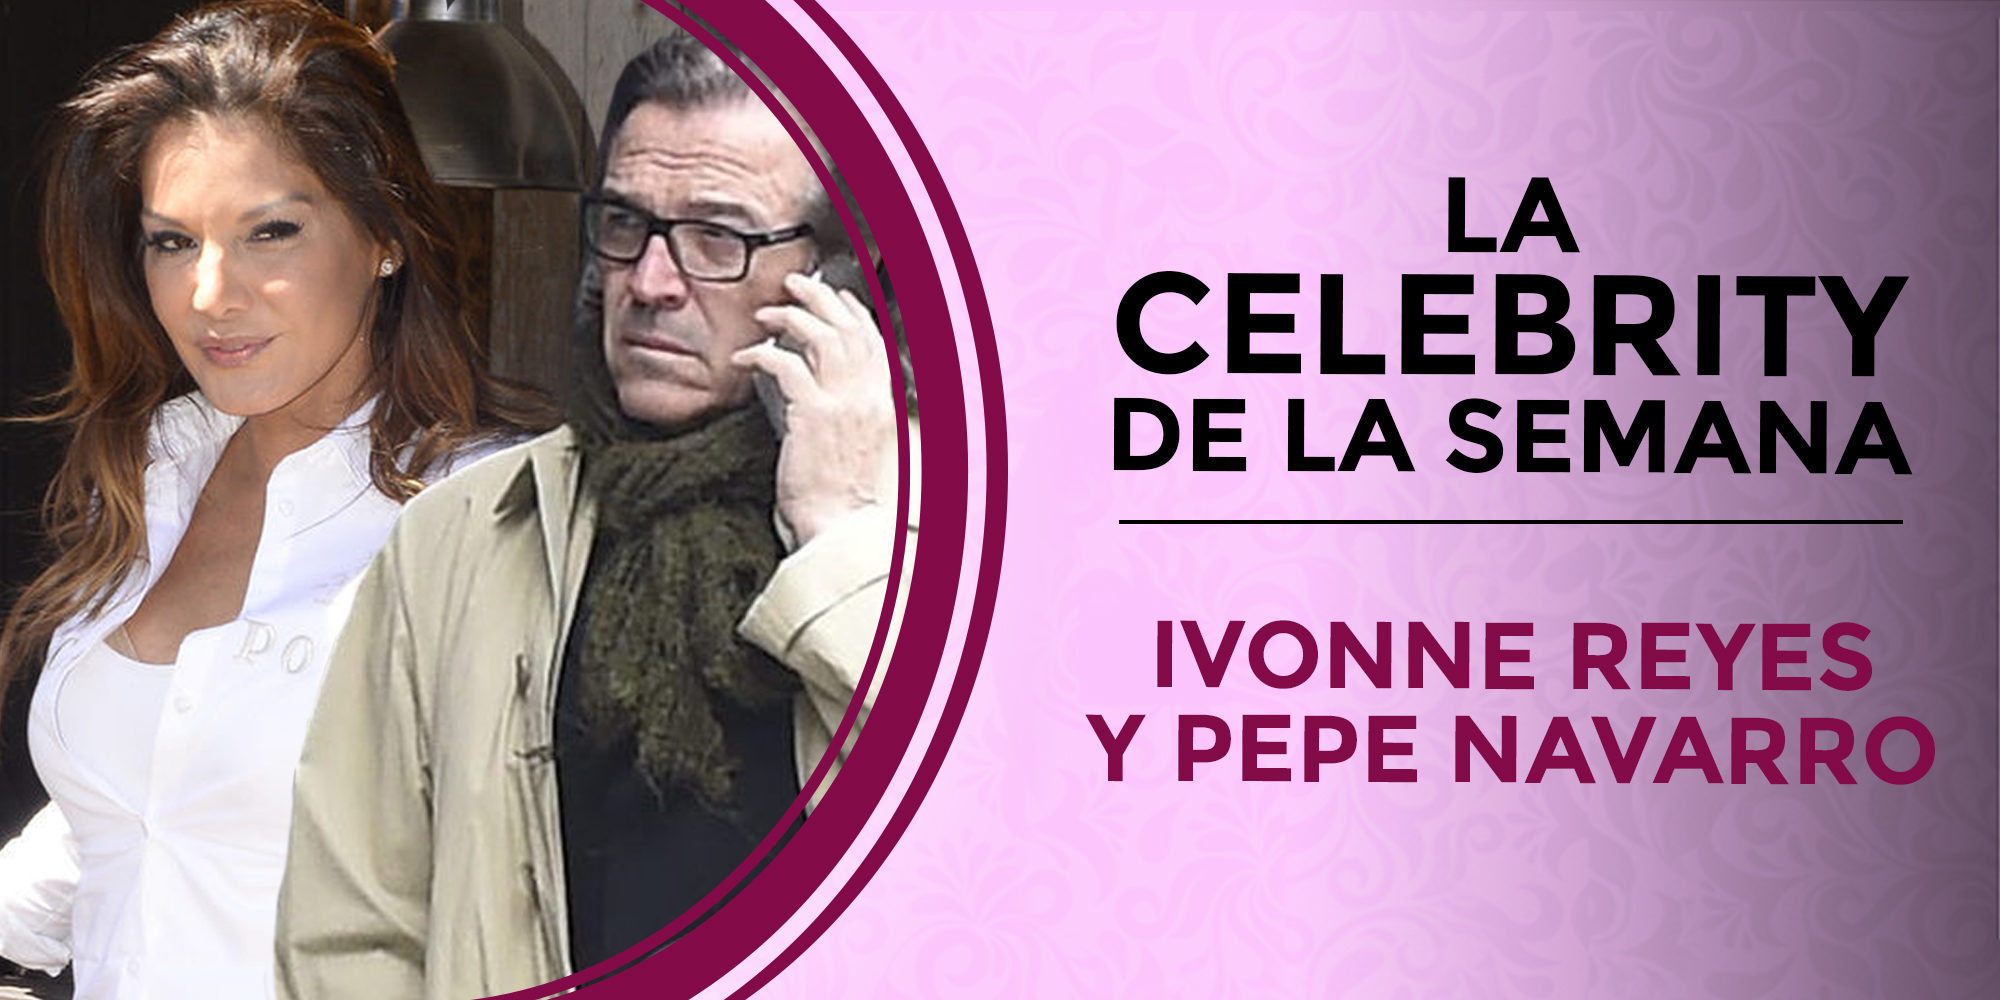 Pepe Navarro se convierte en la celebrity de la semana por su pelea con Ivonne Reyes